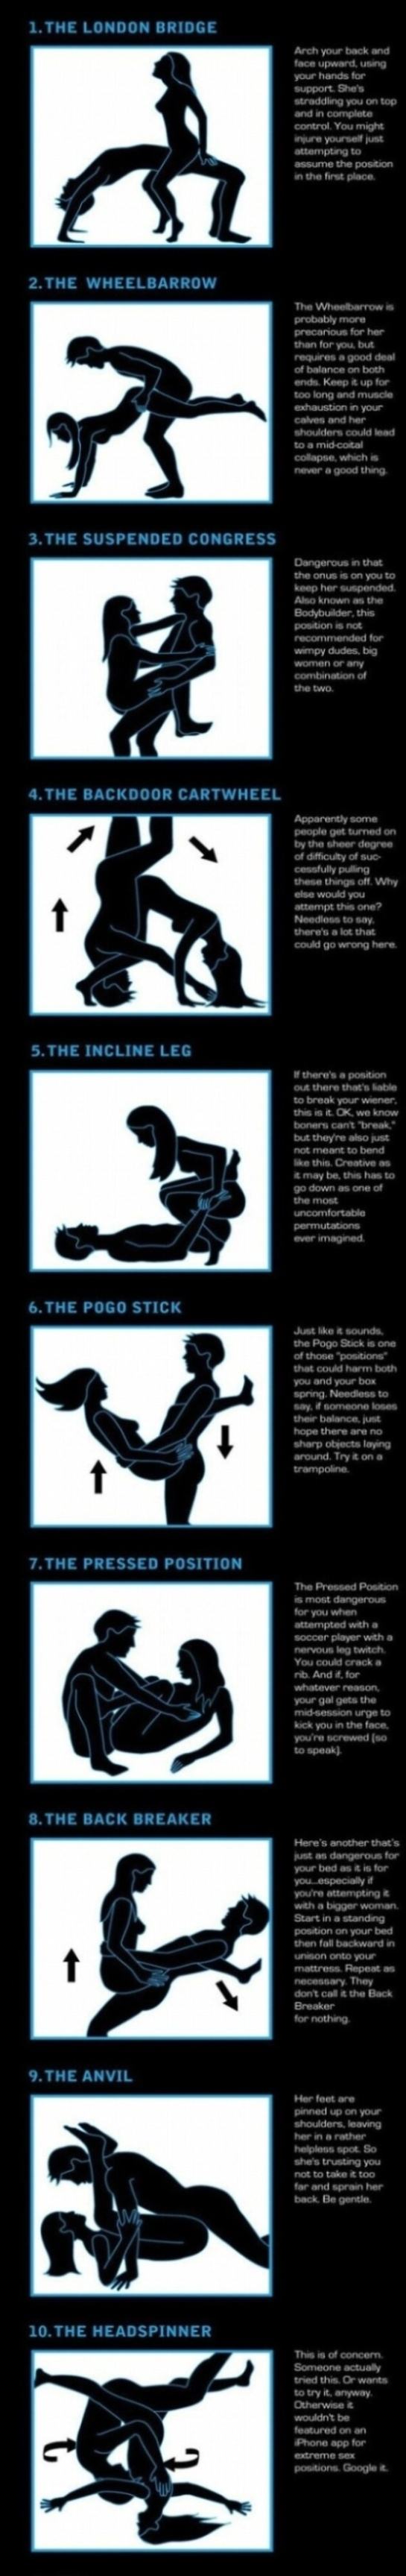 Obrázek Dangerous Sex Positions